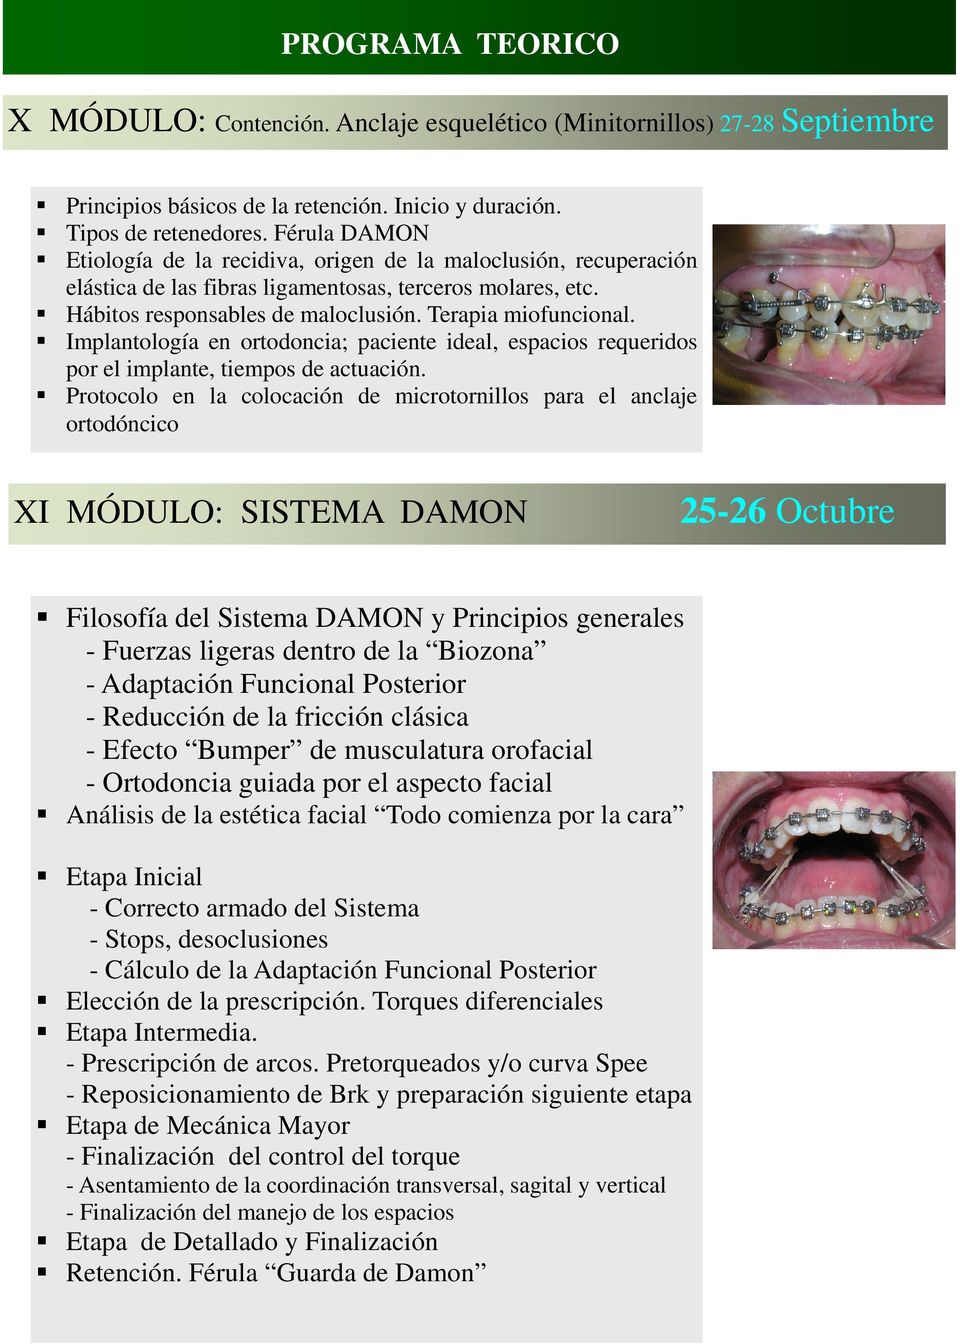 Implantología en ortodoncia; paciente ideal, espacios requeridos por el implante, tiempos de actuación.